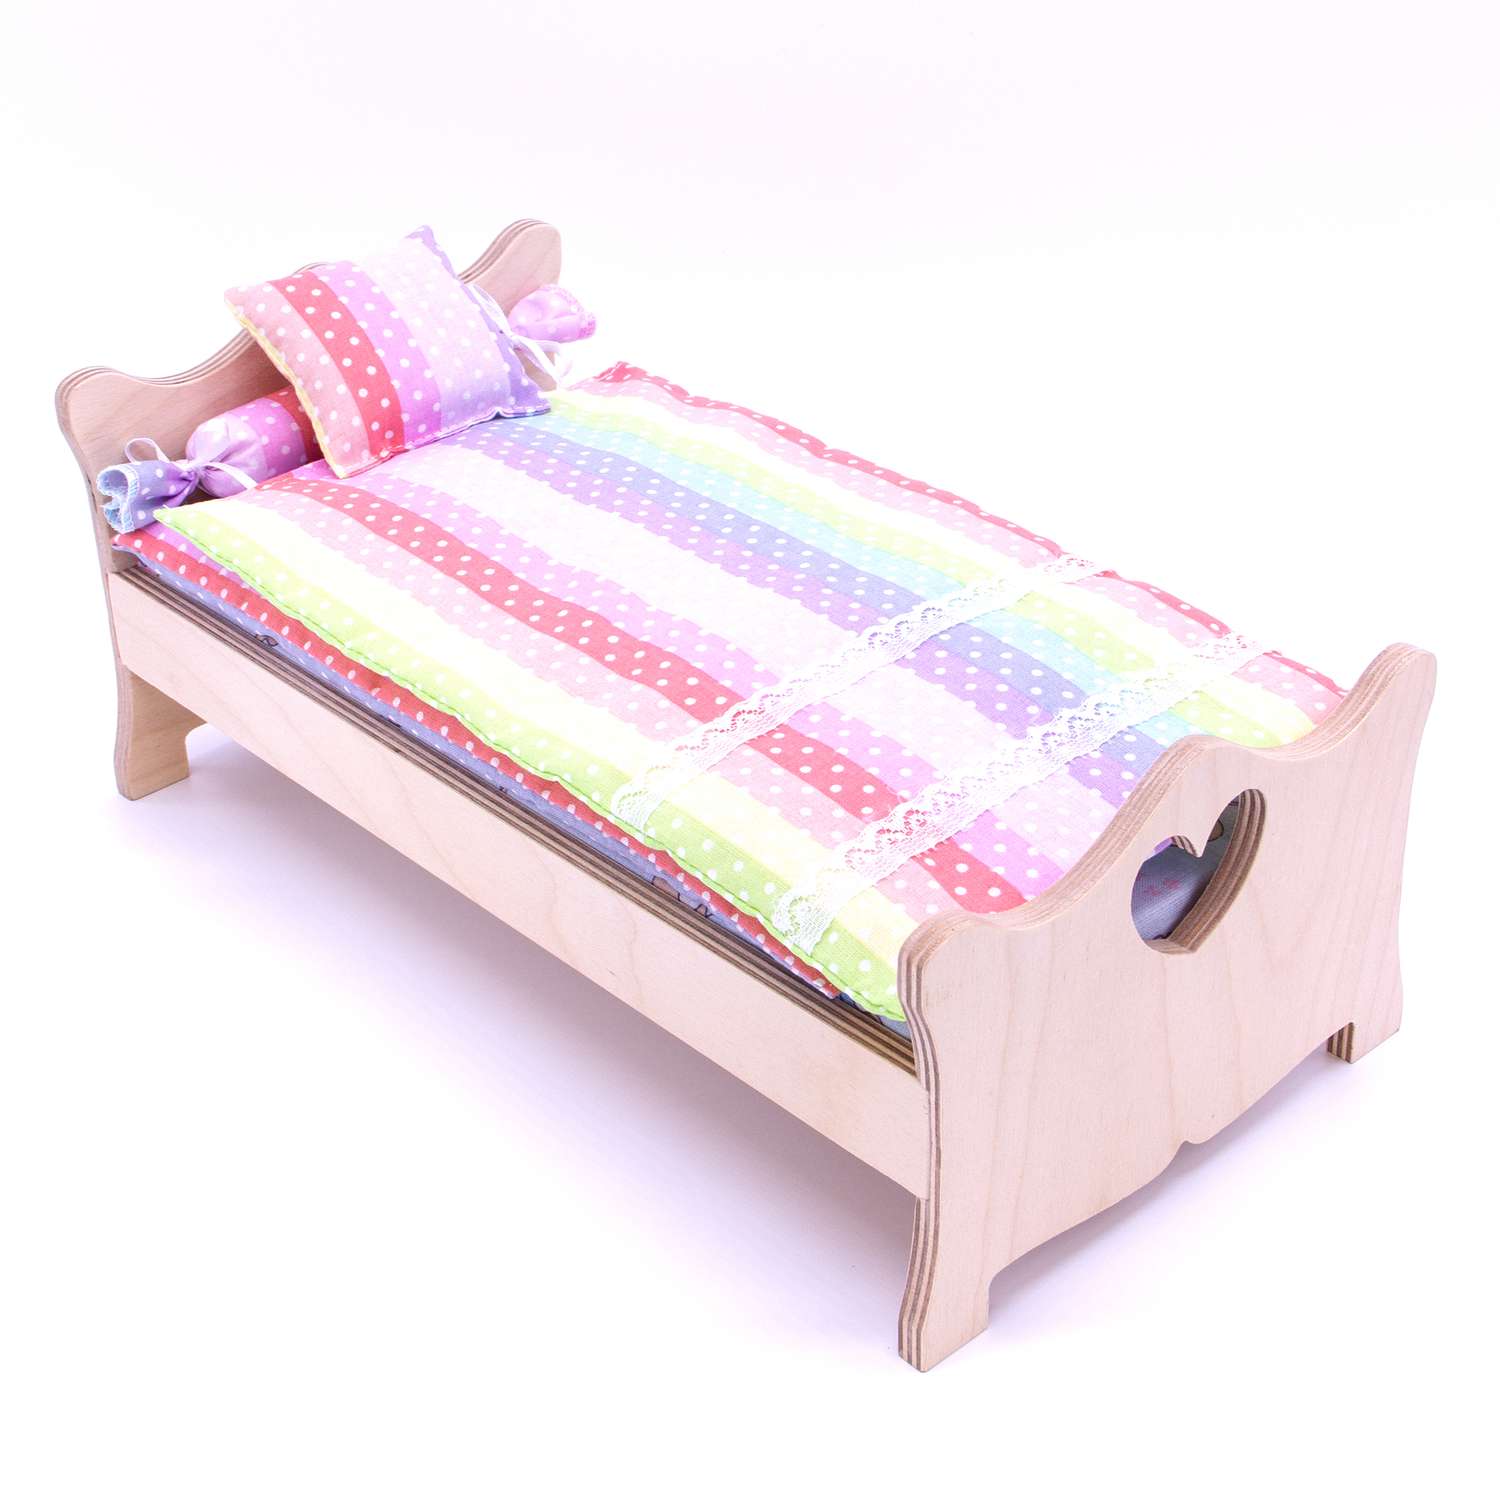 Комлпект постельного белья Модница для куклы 29 см 2002 разноцветный 2002разноцветный - фото 3